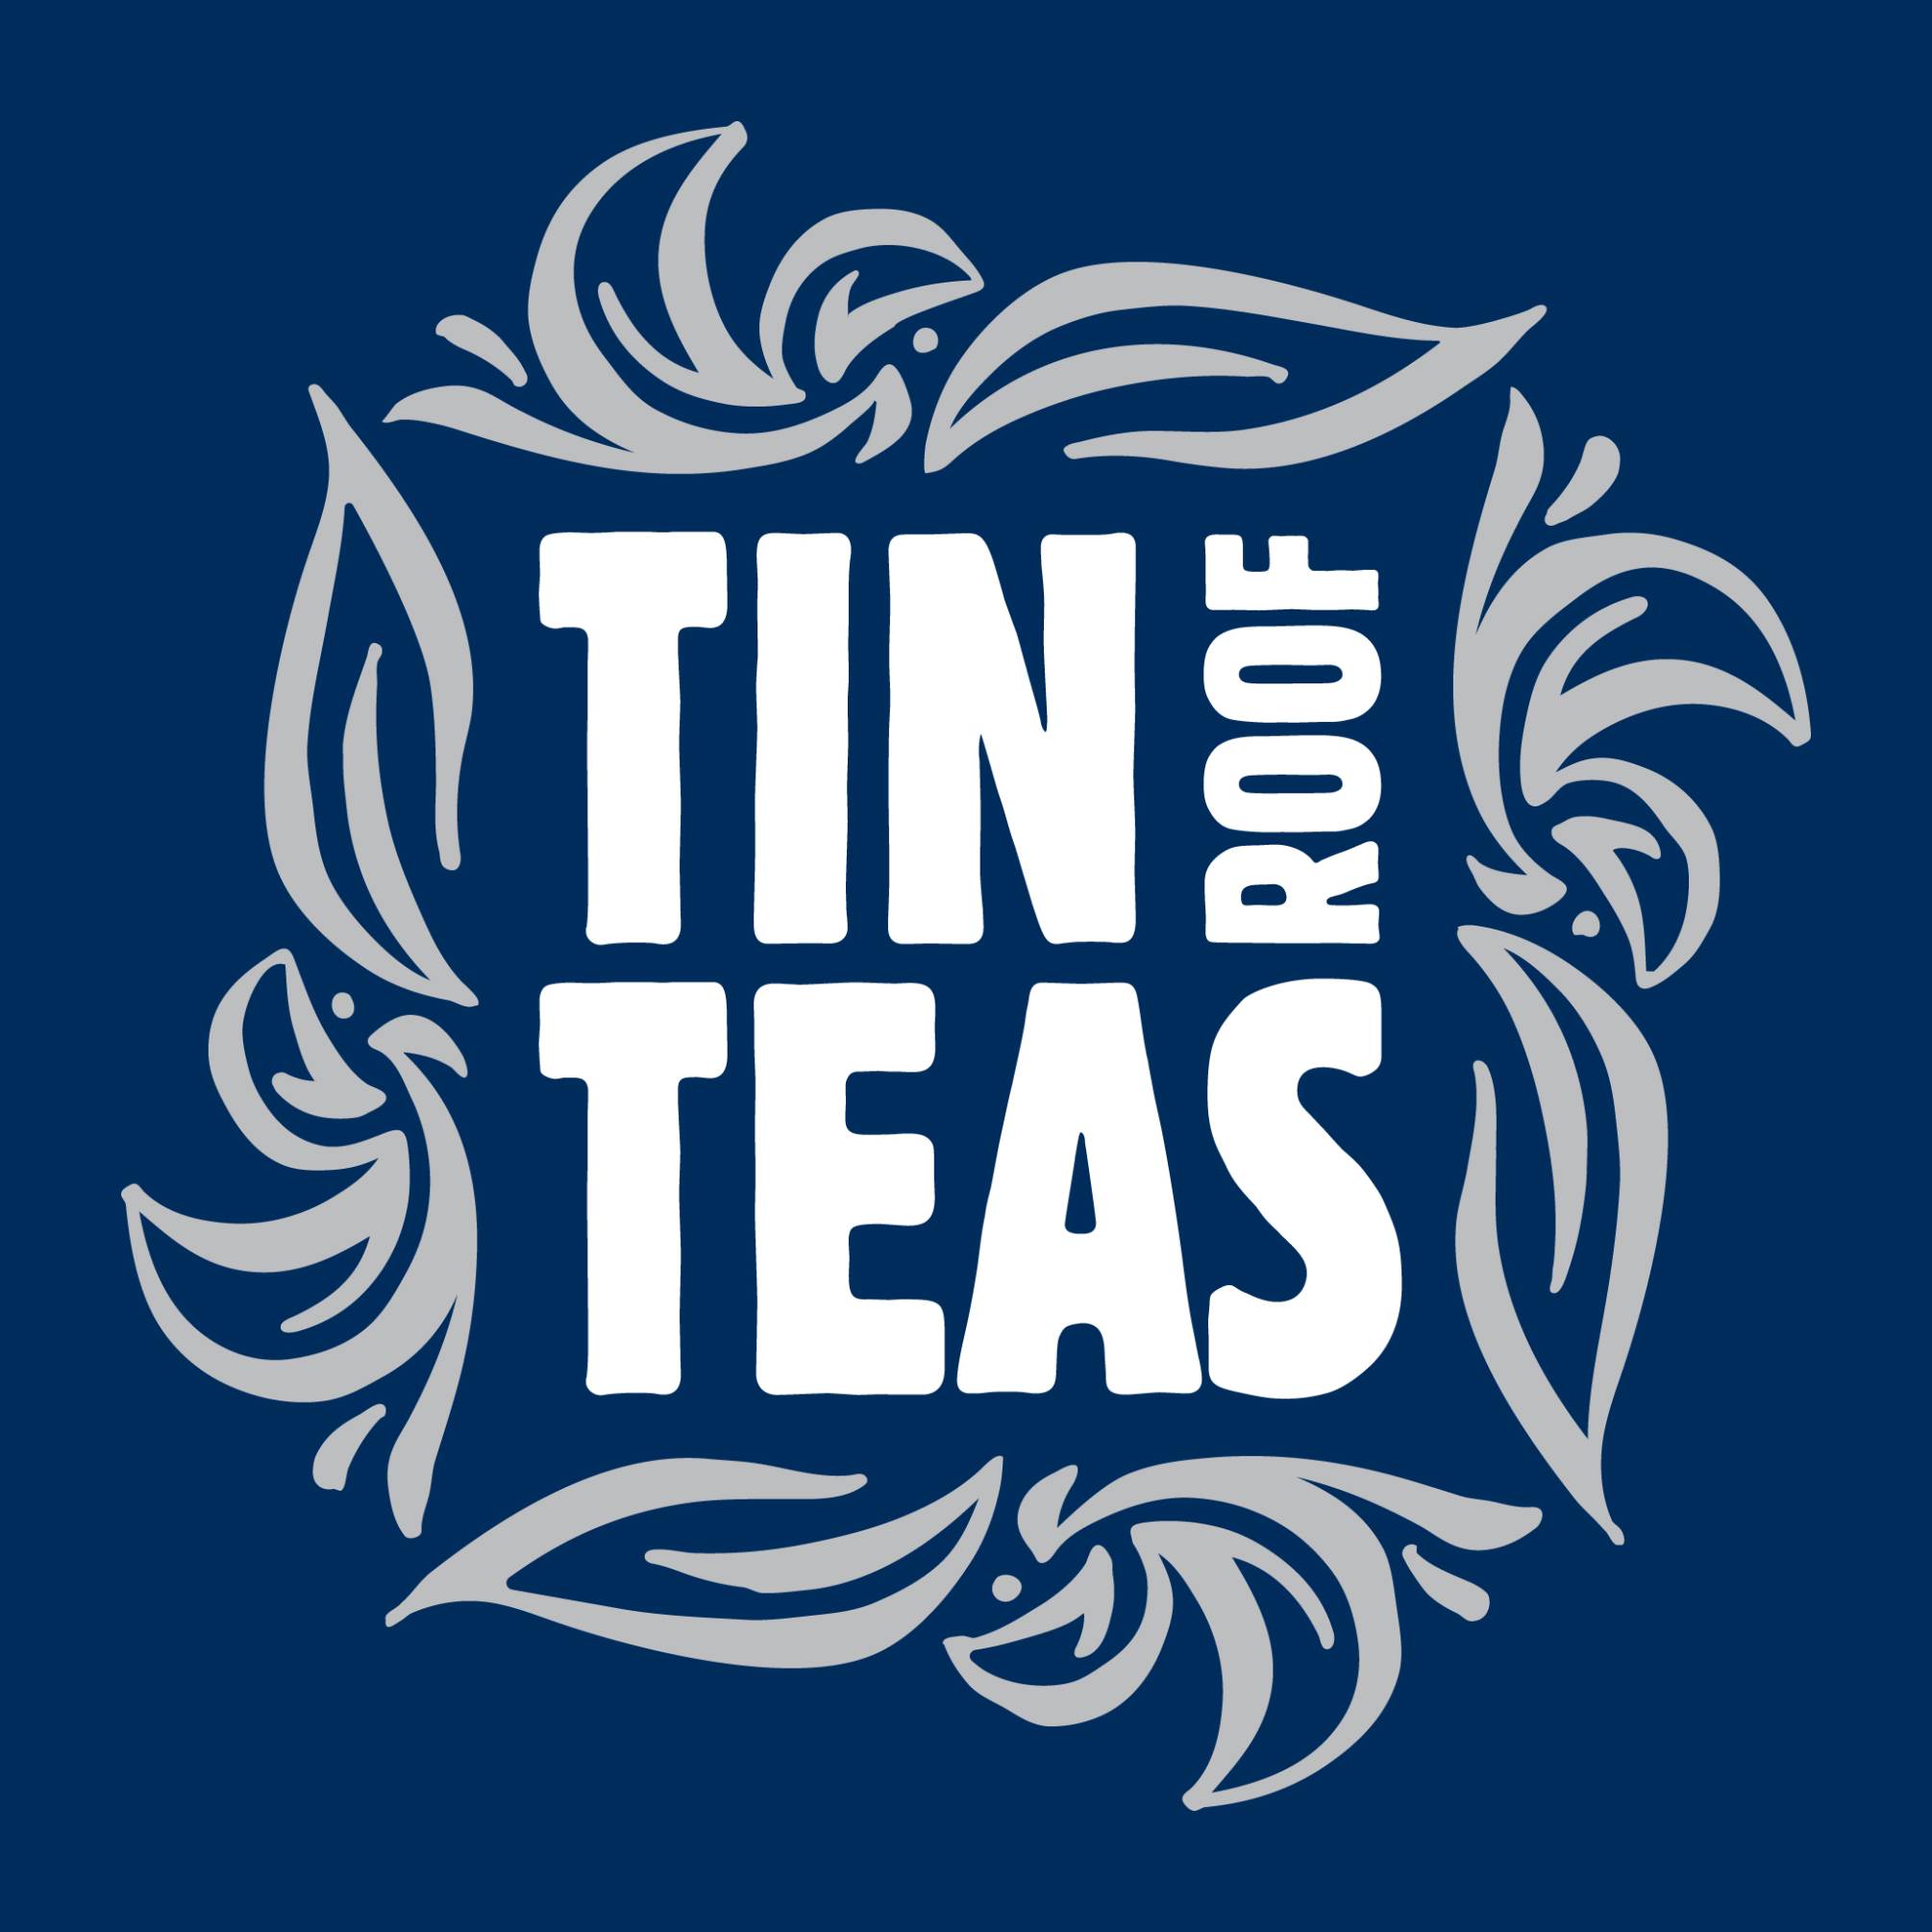 TinRoofTeas logo rev clean